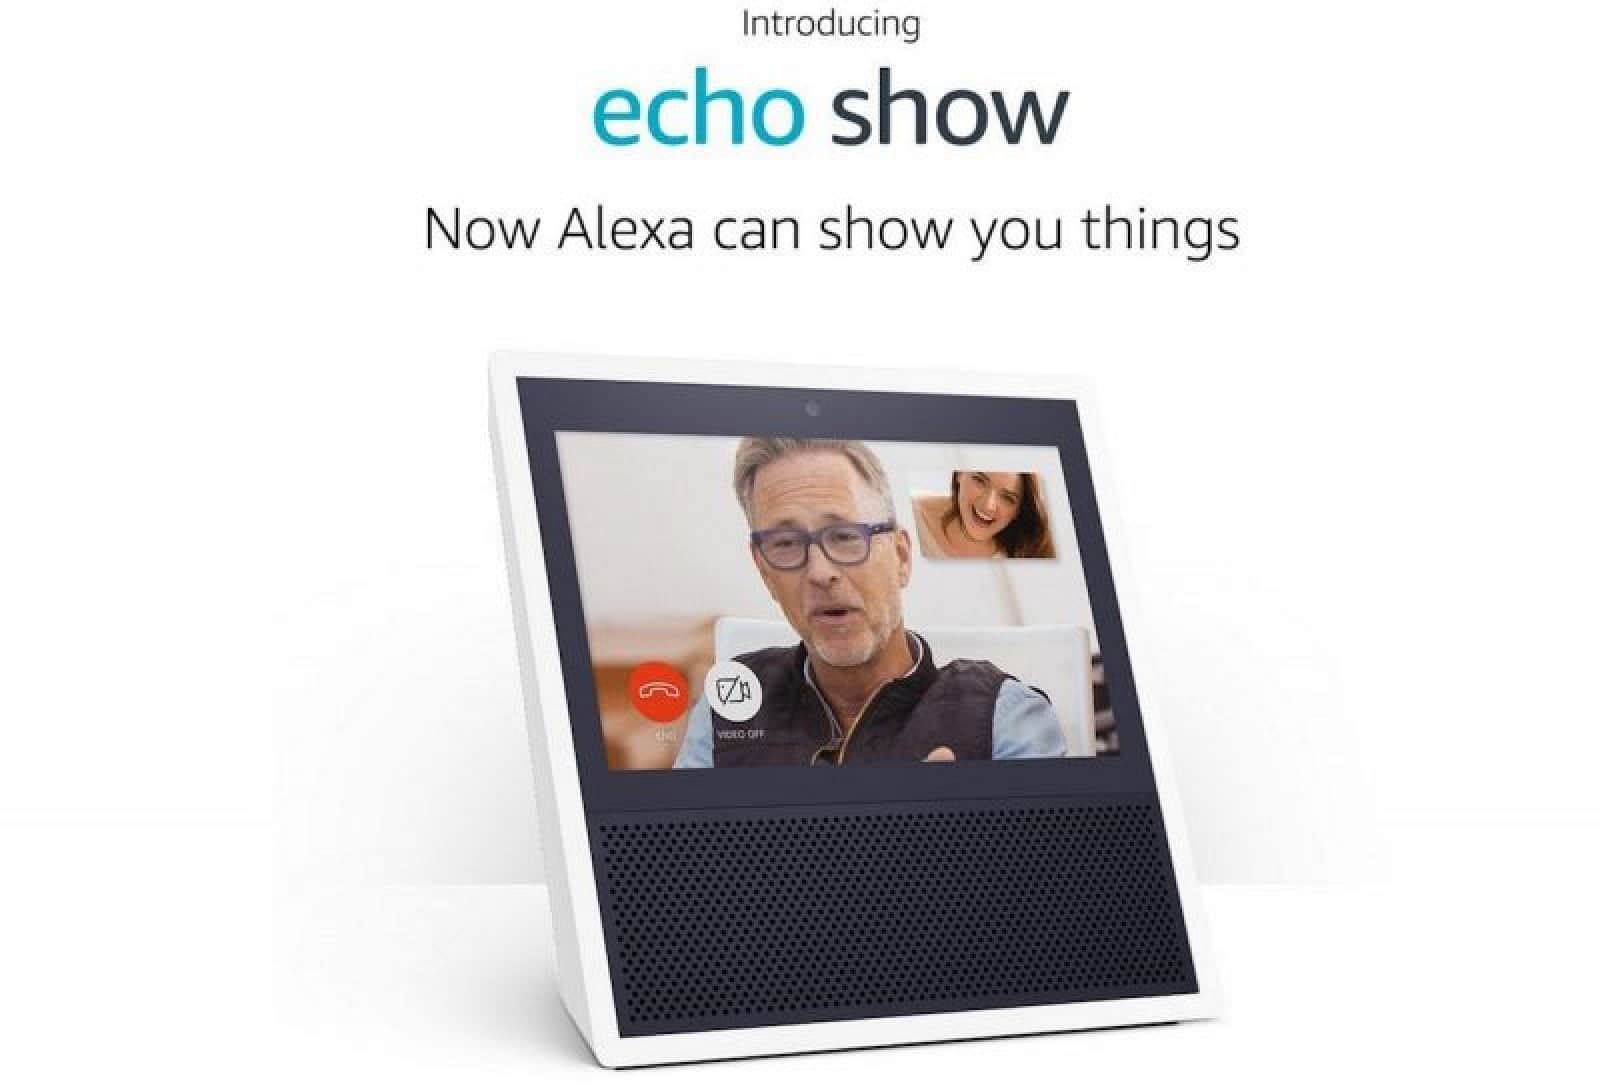 Amazon odhaluje podrobnosti o zahájení nové Amazon Echo Show